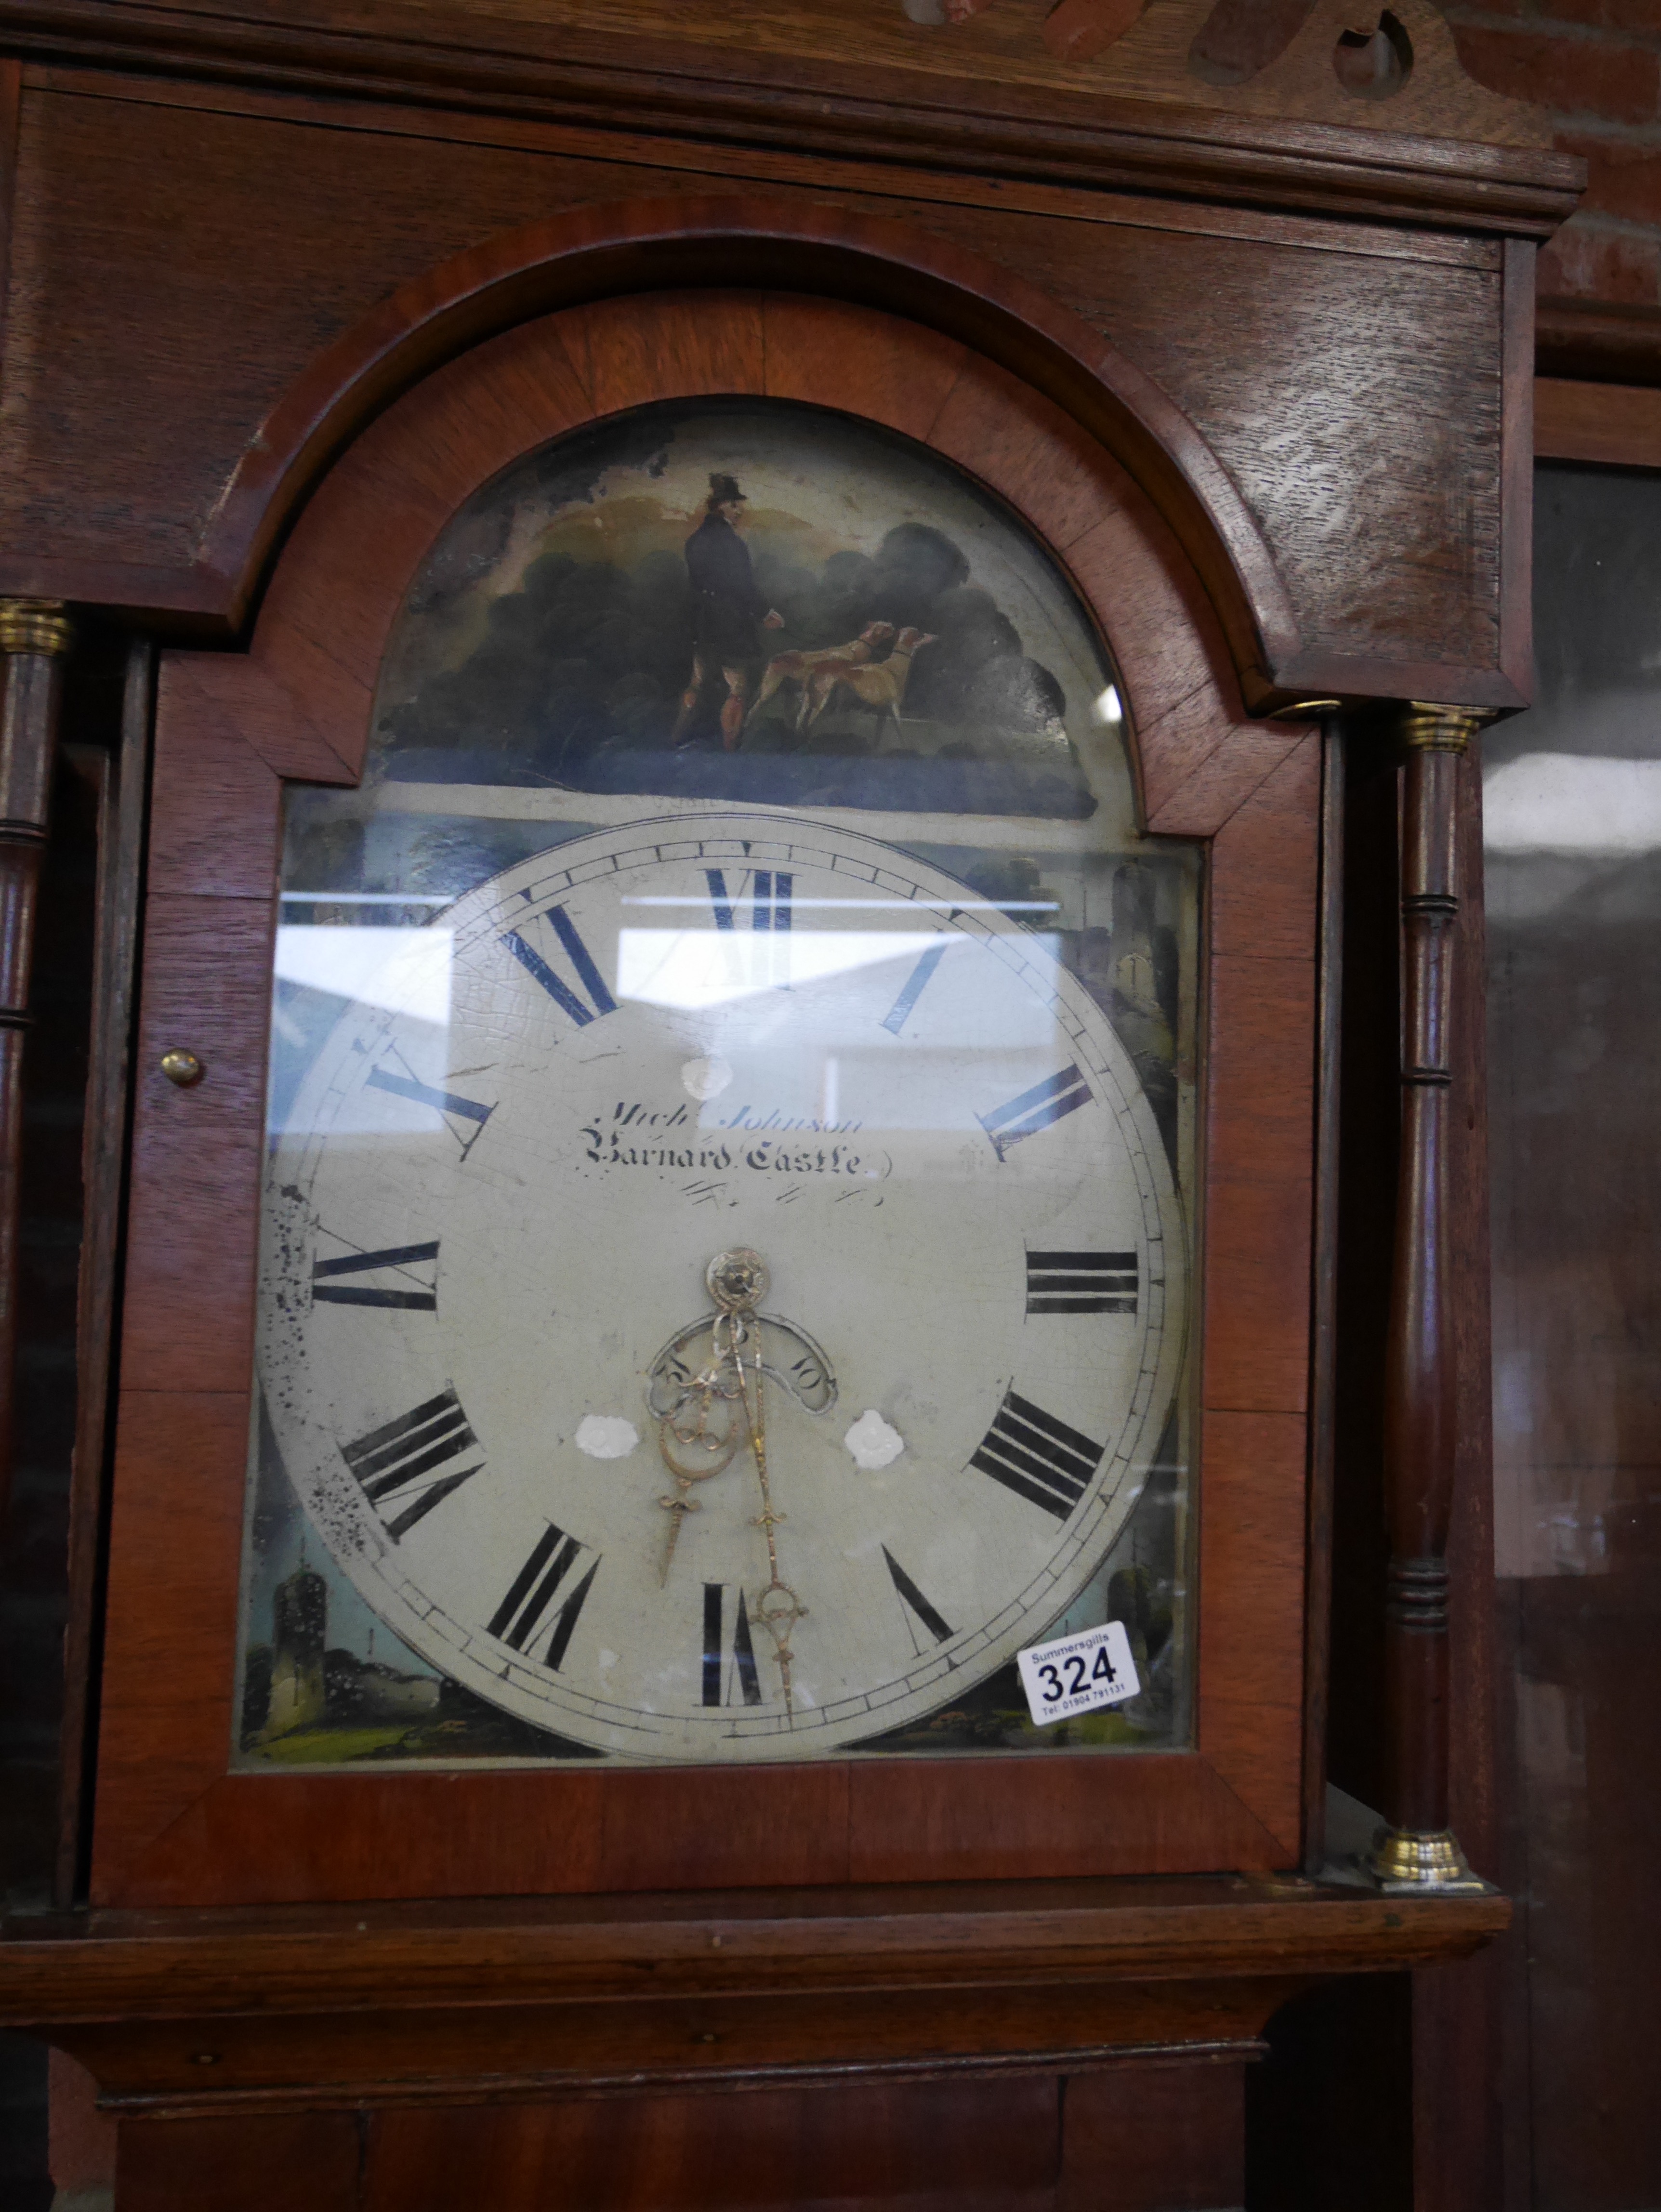 Oak long cased clock by Mich Johnson Barnard Castle - Image 2 of 3